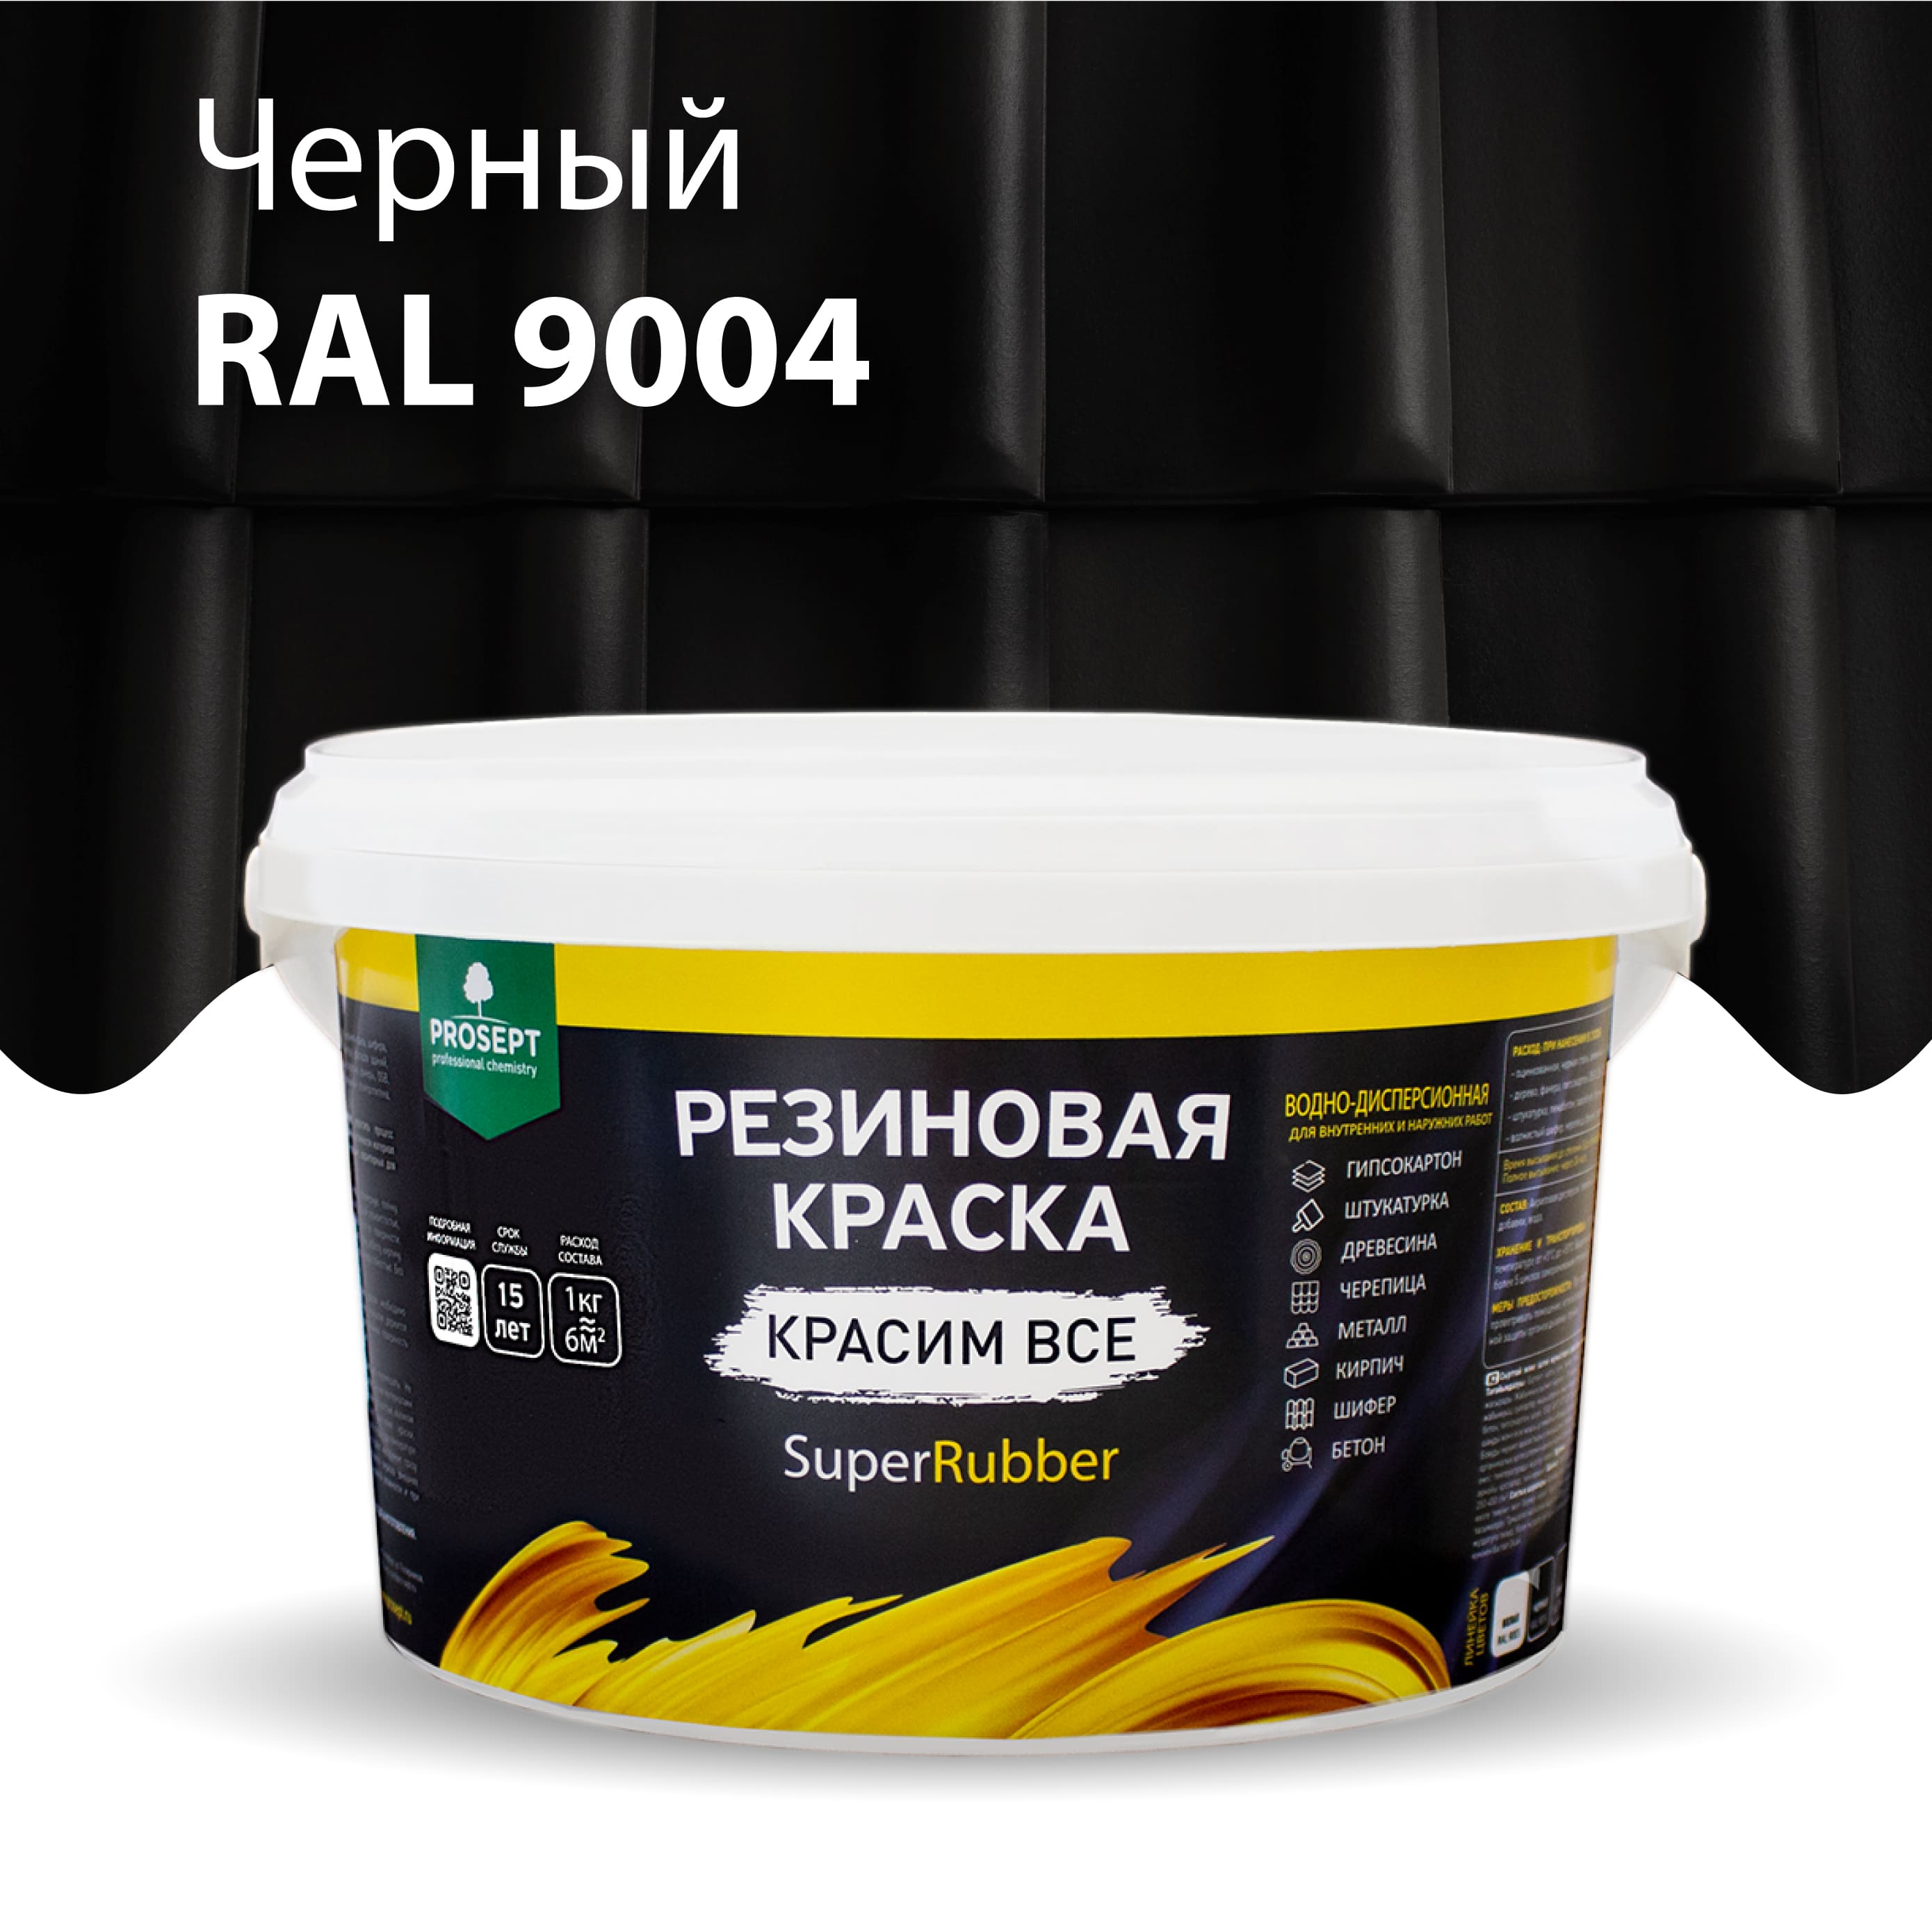 Краска Резиновая краска SuperRubber, RAL 9004 (черная), 3 кг